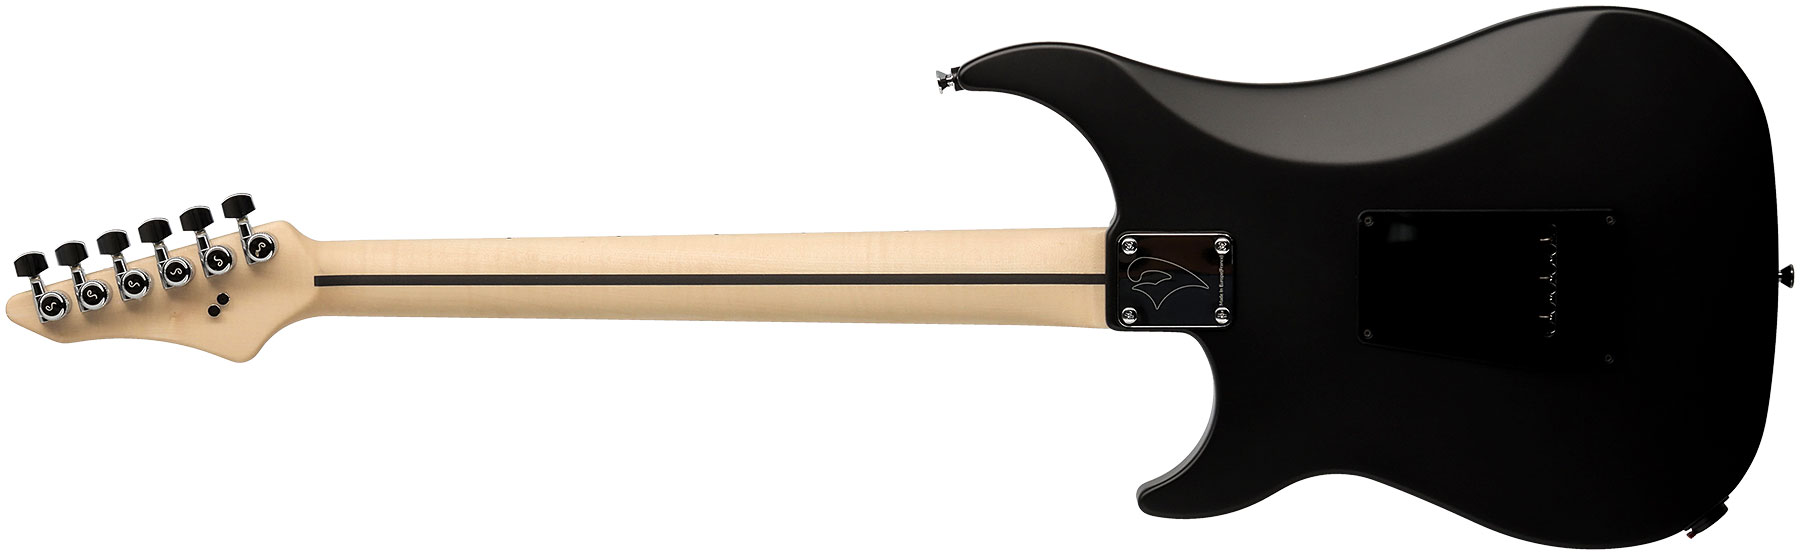 Vigier Excalibur Special Hsh Trem Rw - Black Diamond Matte - Elektrische gitaar in Str-vorm - Variation 1